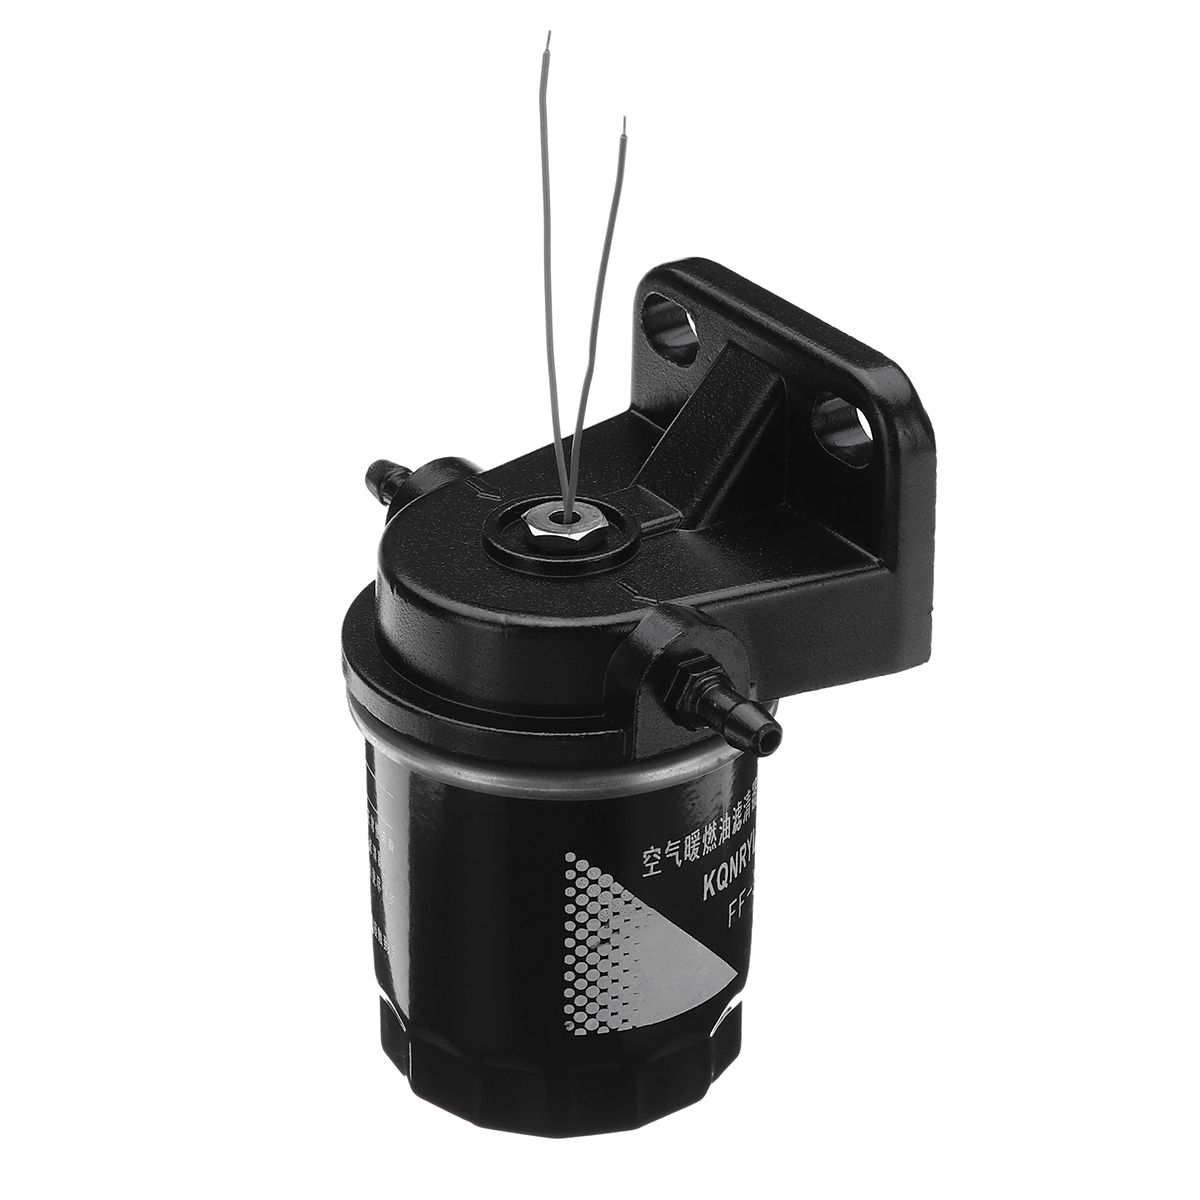 

Дизель Масло Топливный фильтр Водоотделитель для воздушной парковки Нагреватель Бак RV Авто Грузовик